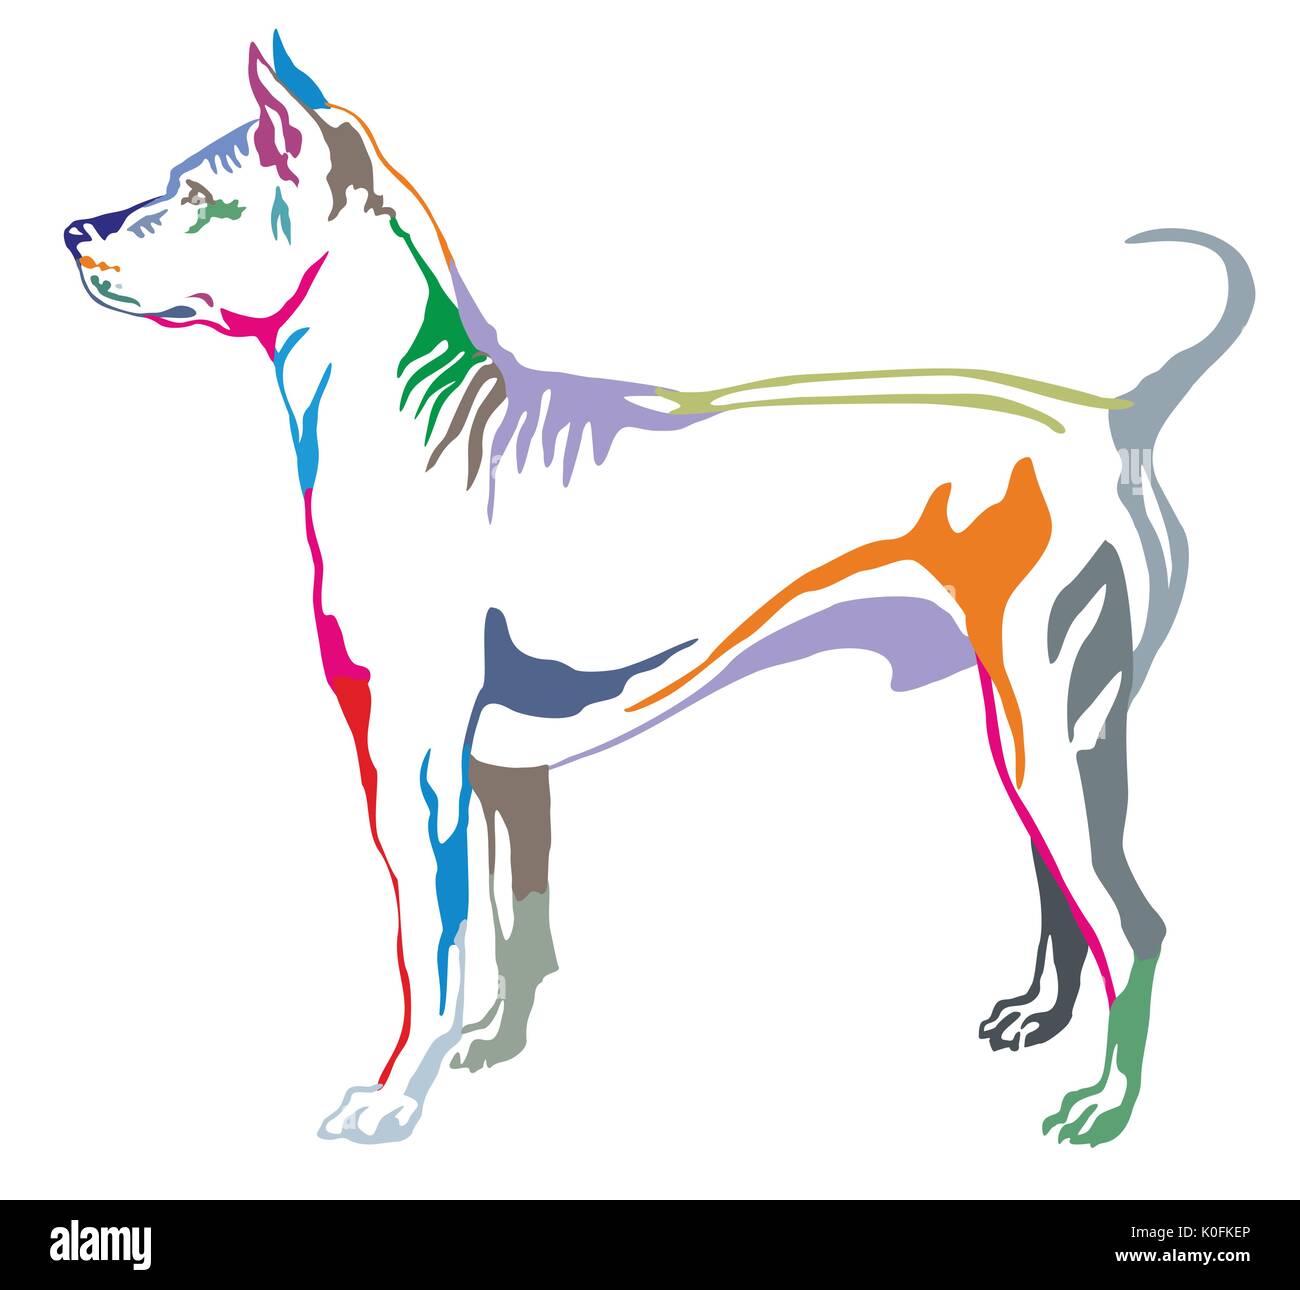 Portrait décoratives colorées de l'article profil de chien Grand Spitz, vector illustration isolé sur fond blanc Illustration de Vecteur